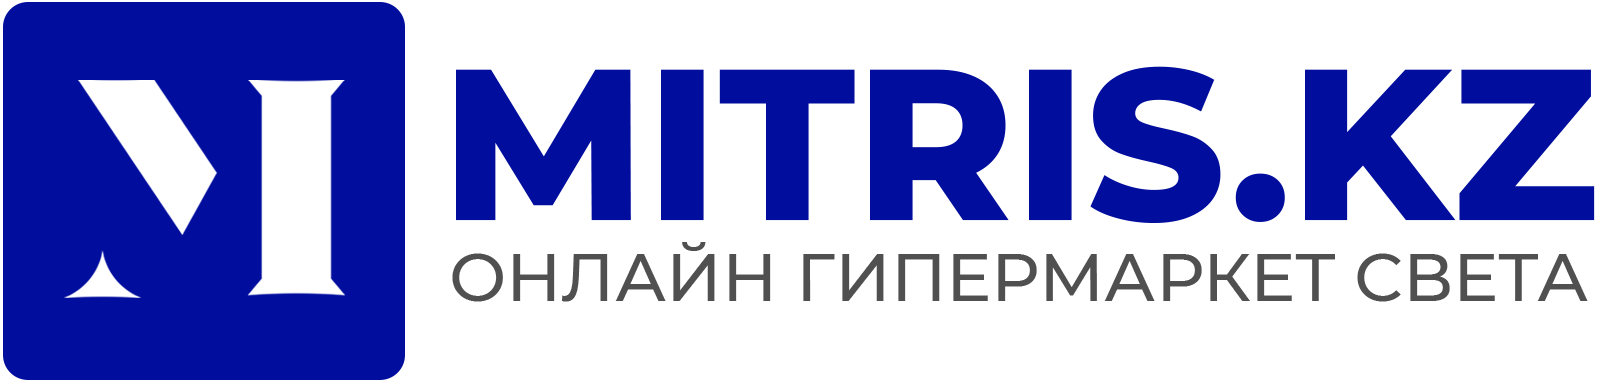 Mitris.kz - гипер интернет магазин с шоу-румом в г.Астана